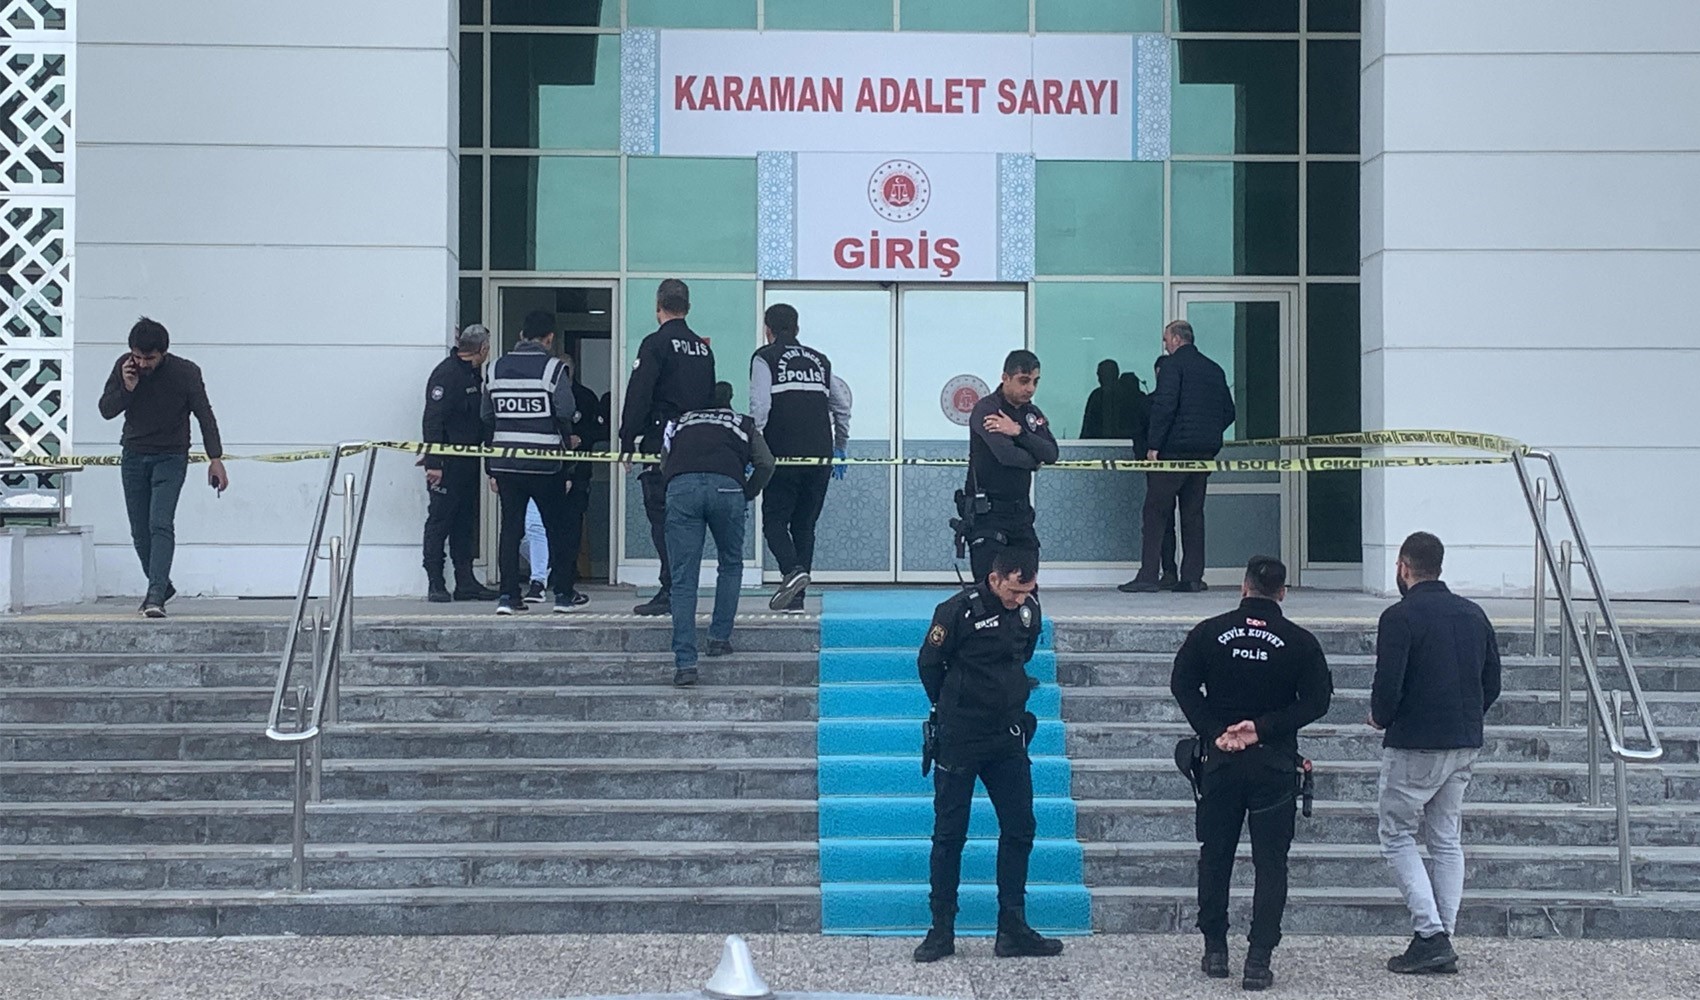 Karaman’da adliye girişinde silahlı saldırı